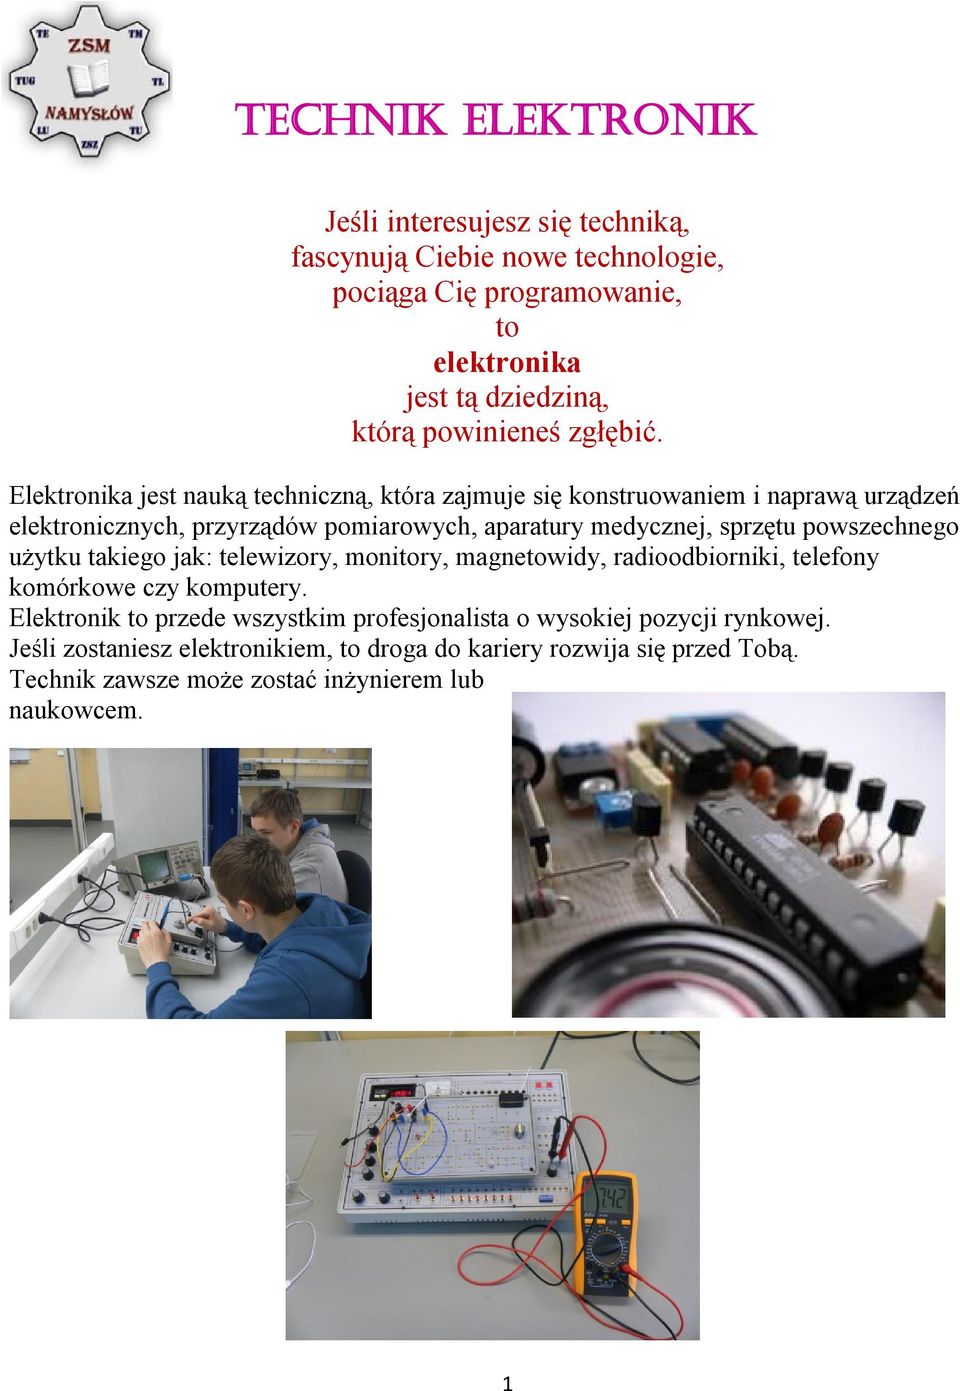 Elektronika jest nauką techniczną, która zajmuje się konstruowaniem i naprawą urządzeń elektronicznych, przyrządów pomiarowych, aparatury medycznej, sprzętu